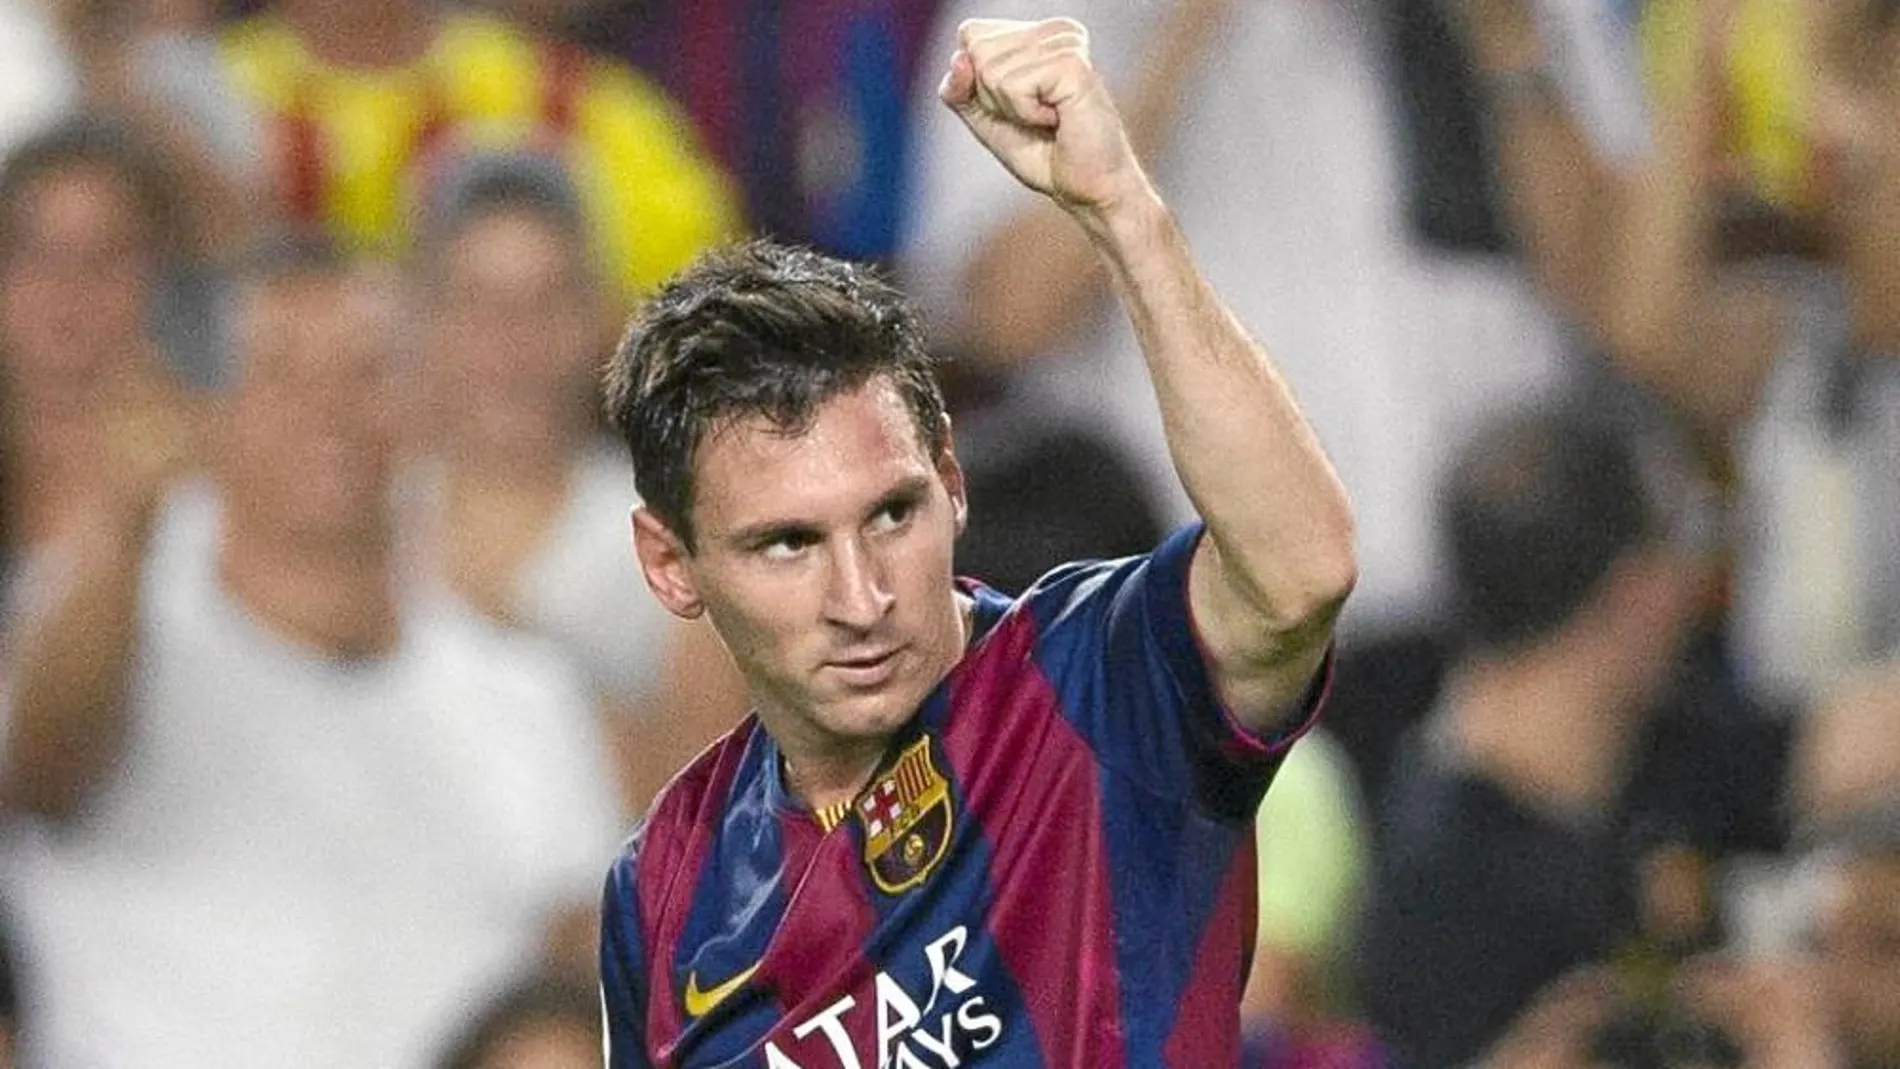 Cara a cara: ¿Debe el Bernabéu homenajear a Messi?